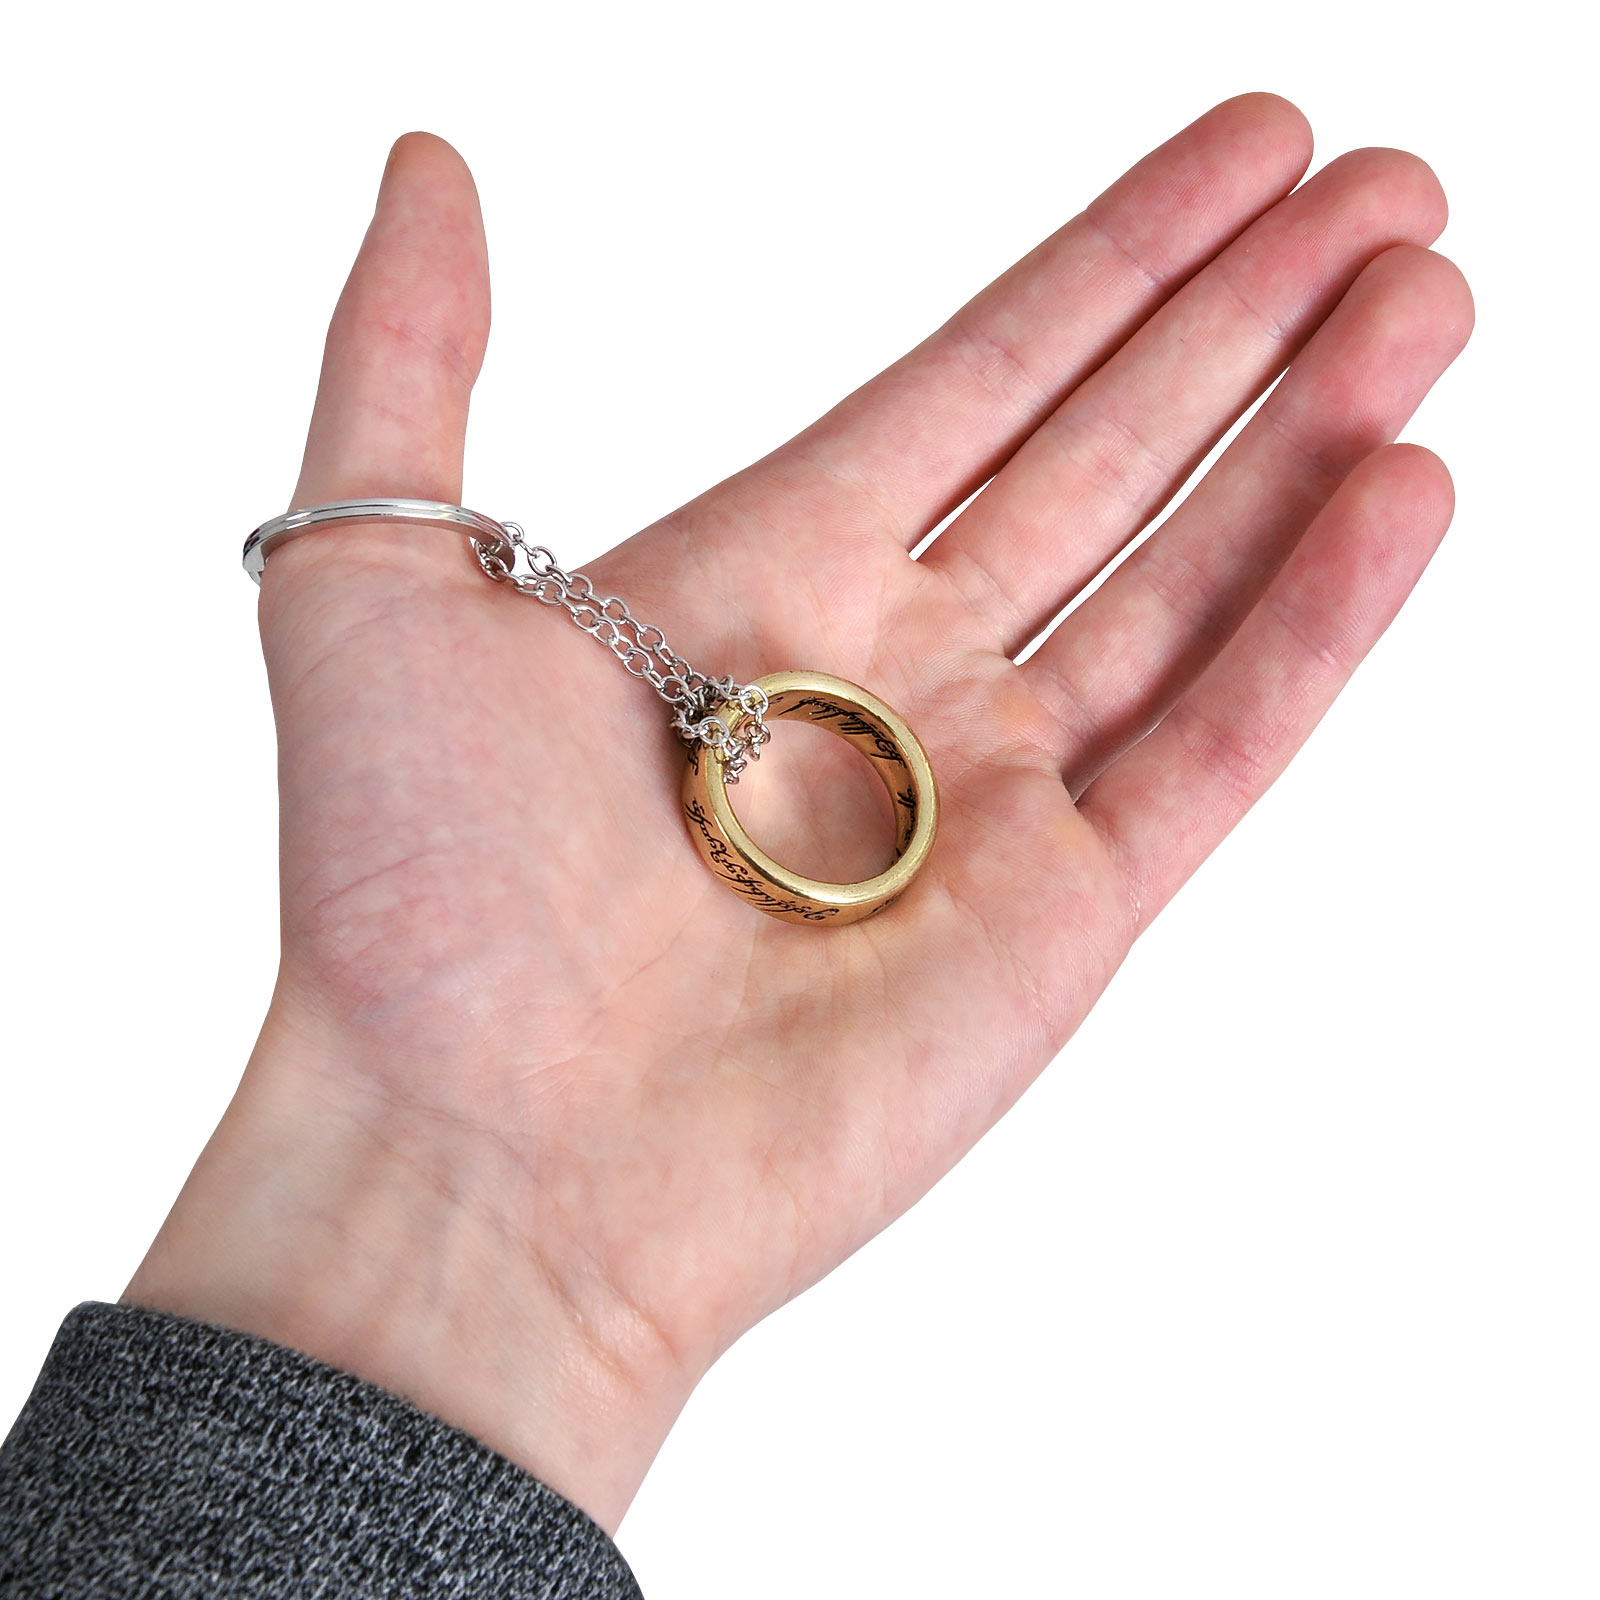 Heer der Ringen - De Ene Ring 3D Sleutelhanger